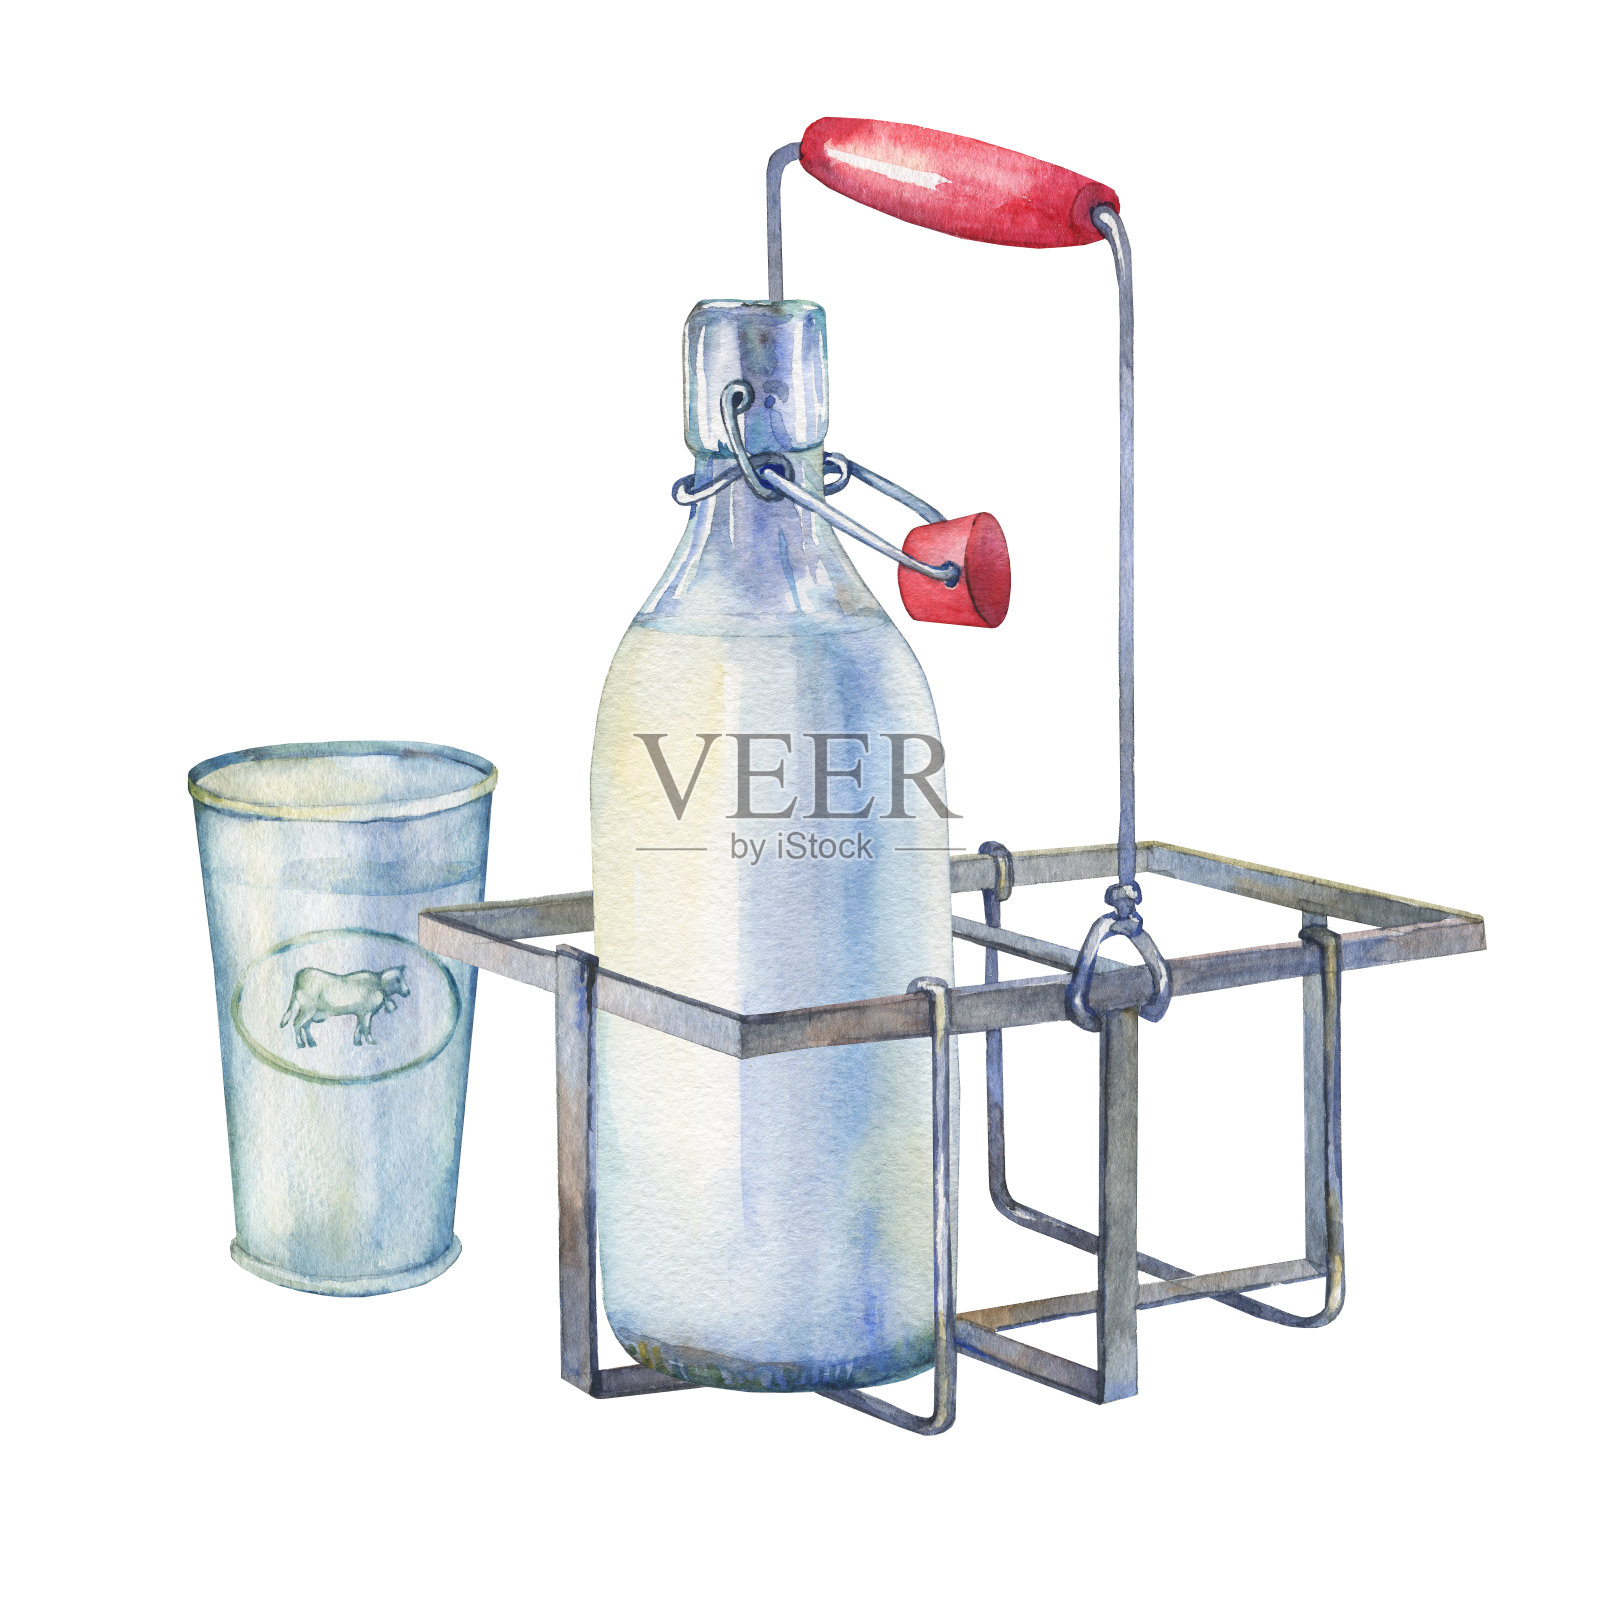 复古的农家厨房金属支架与牛奶瓶和牛奶杯。手绘水彩画在白色的背景。插画图片素材